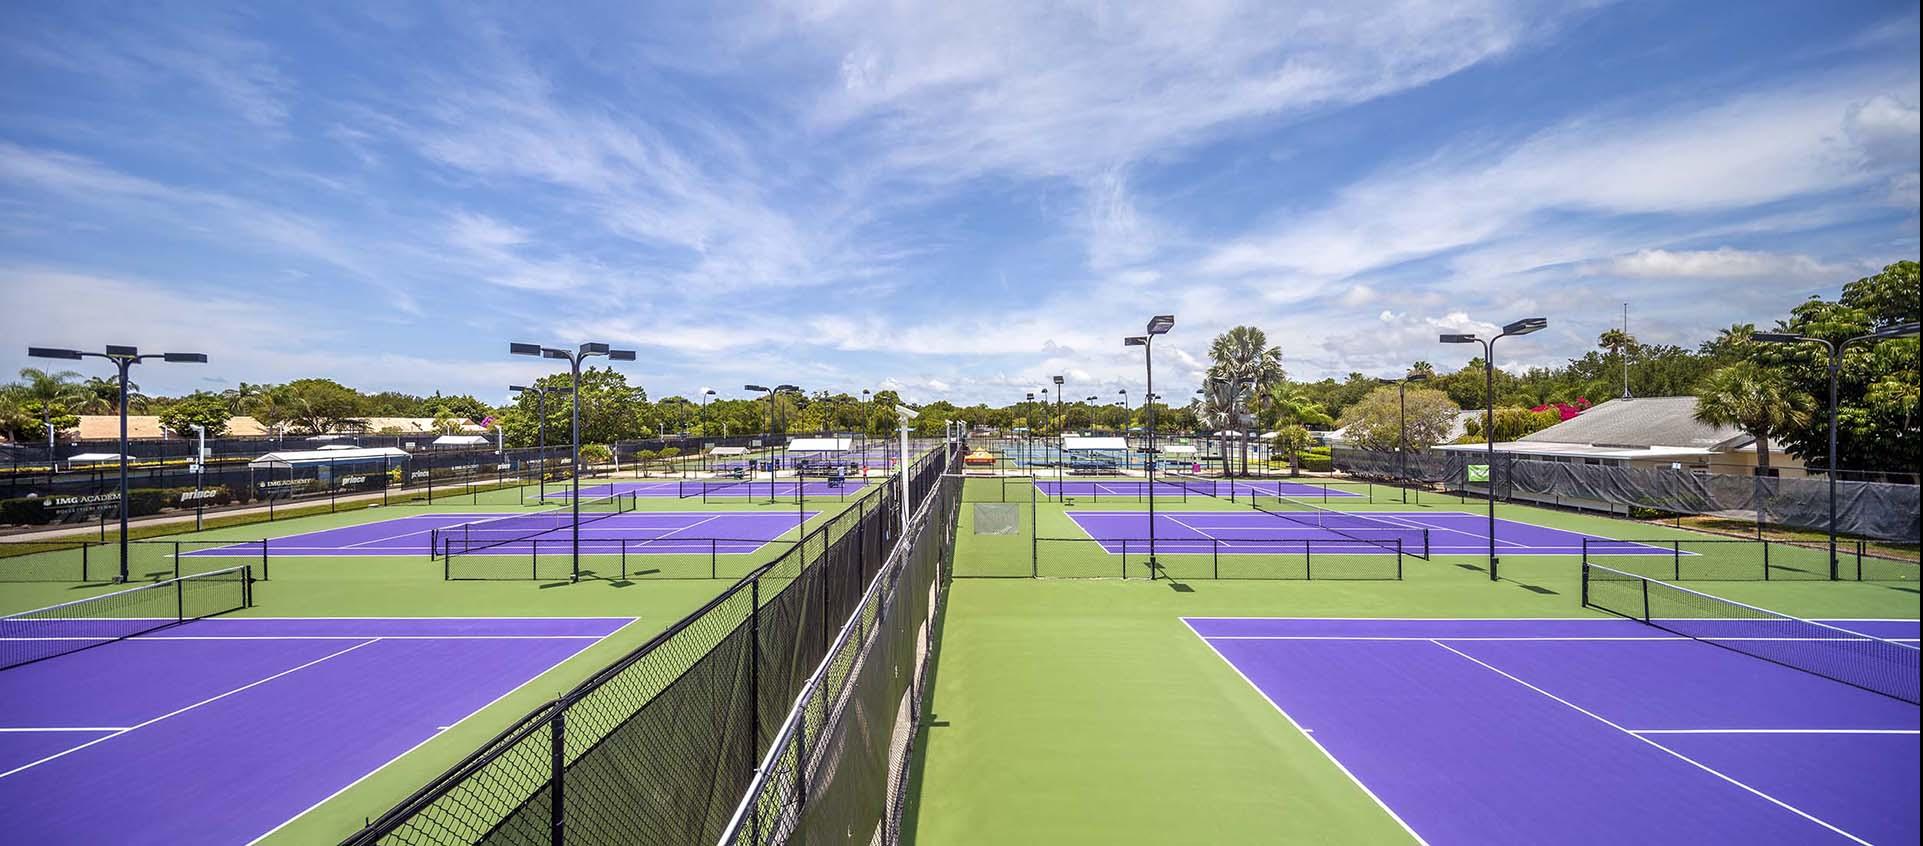 tennis courts at IMG Academy | IMGAcademy.com